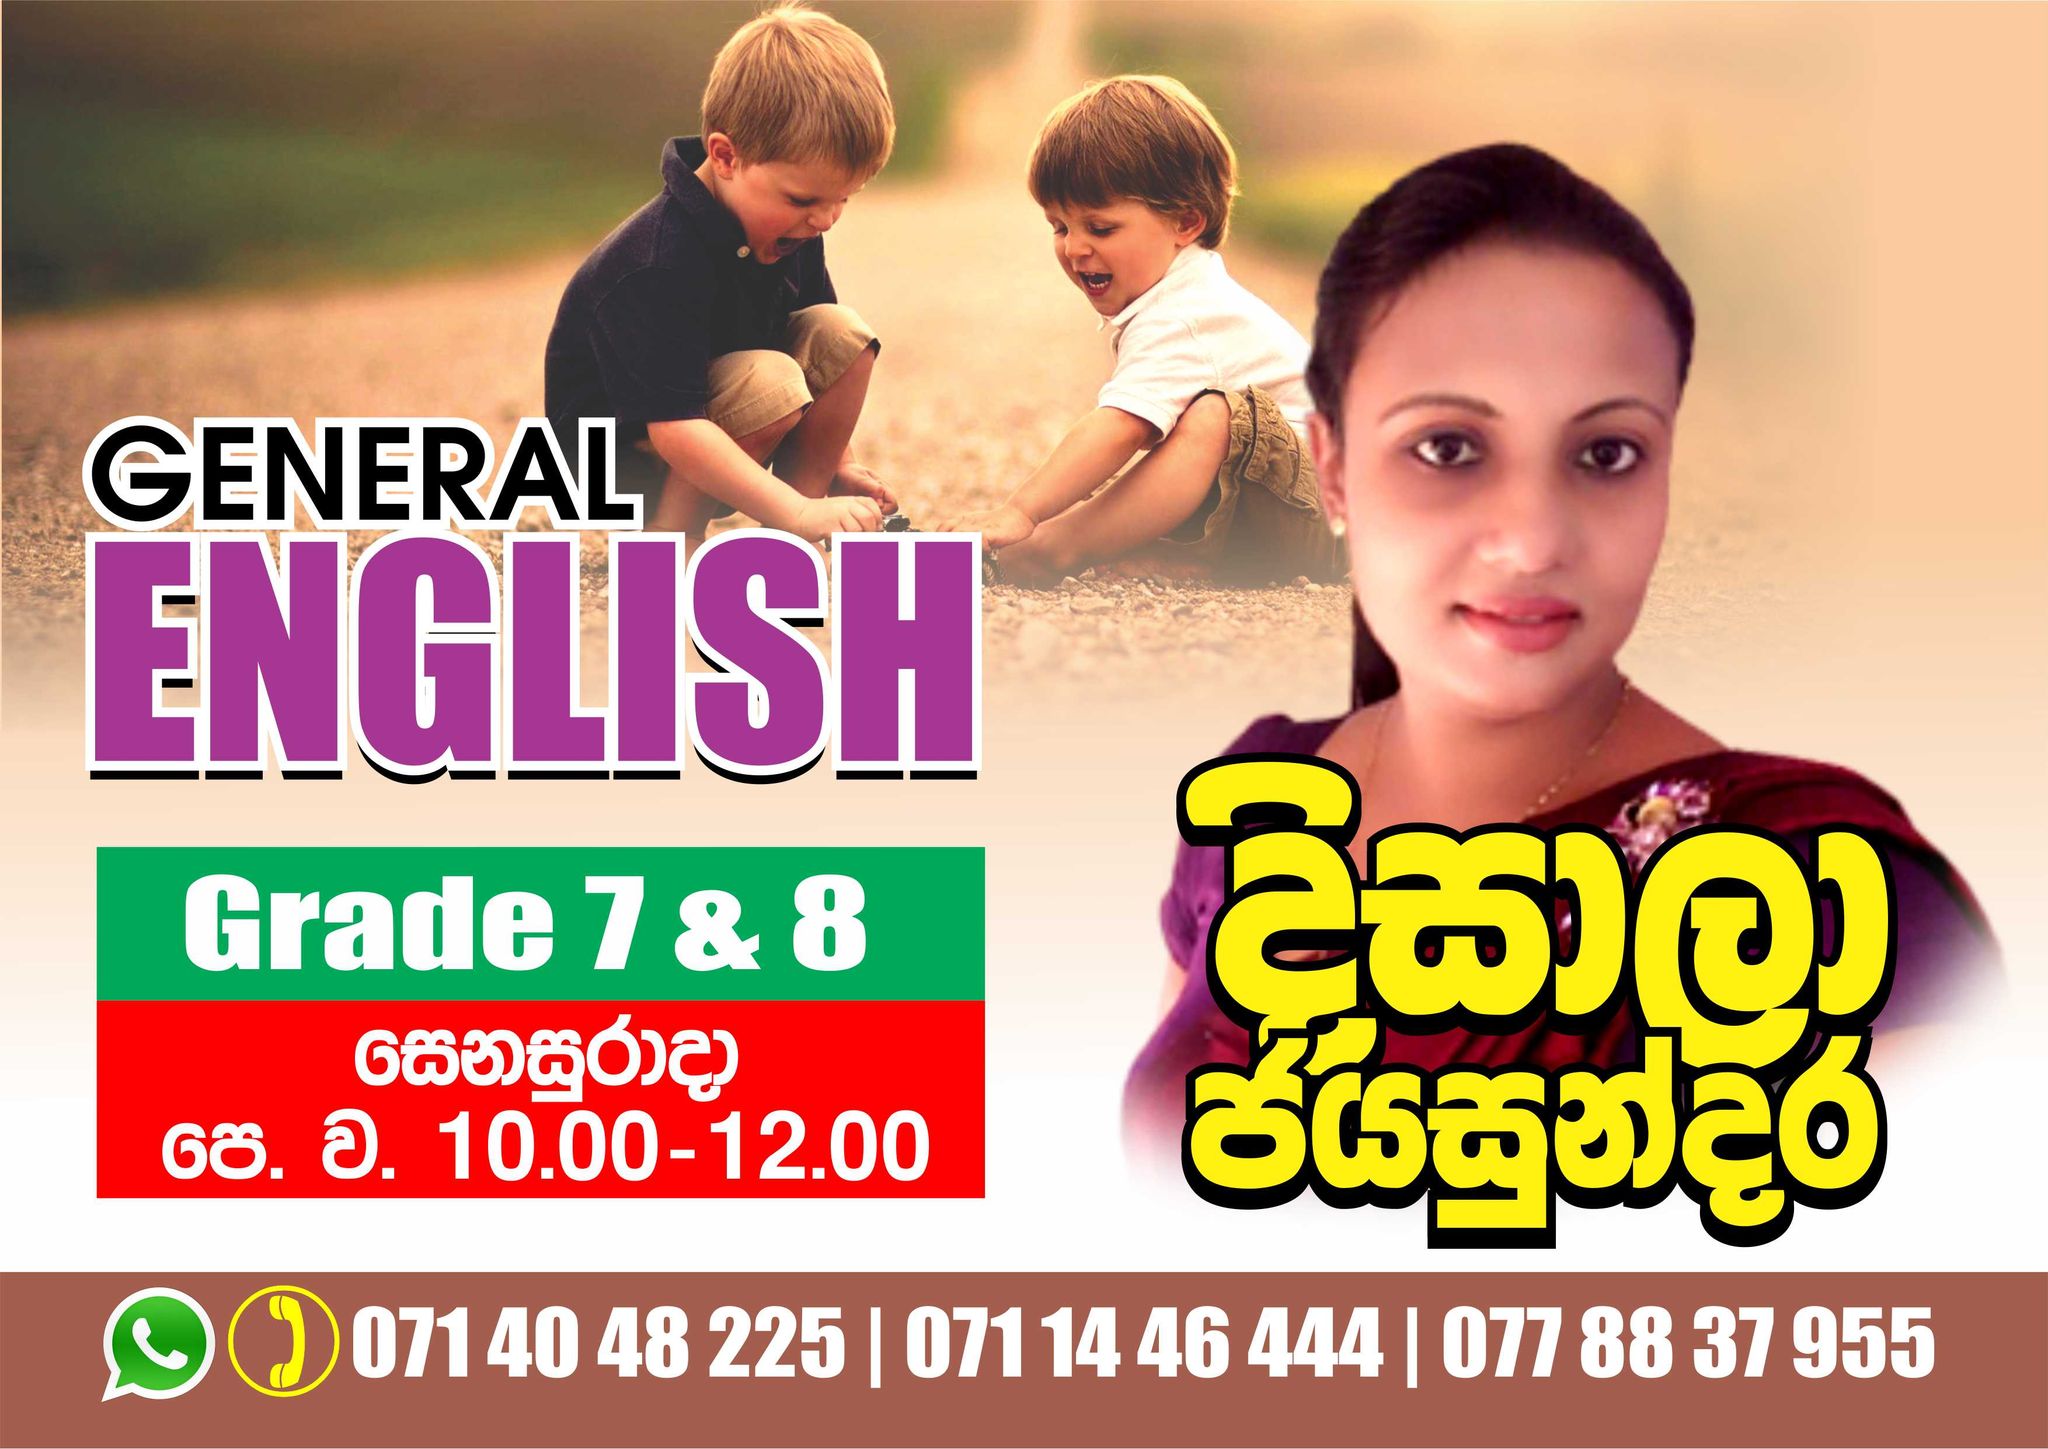 Grade 7 & 8 General English -May